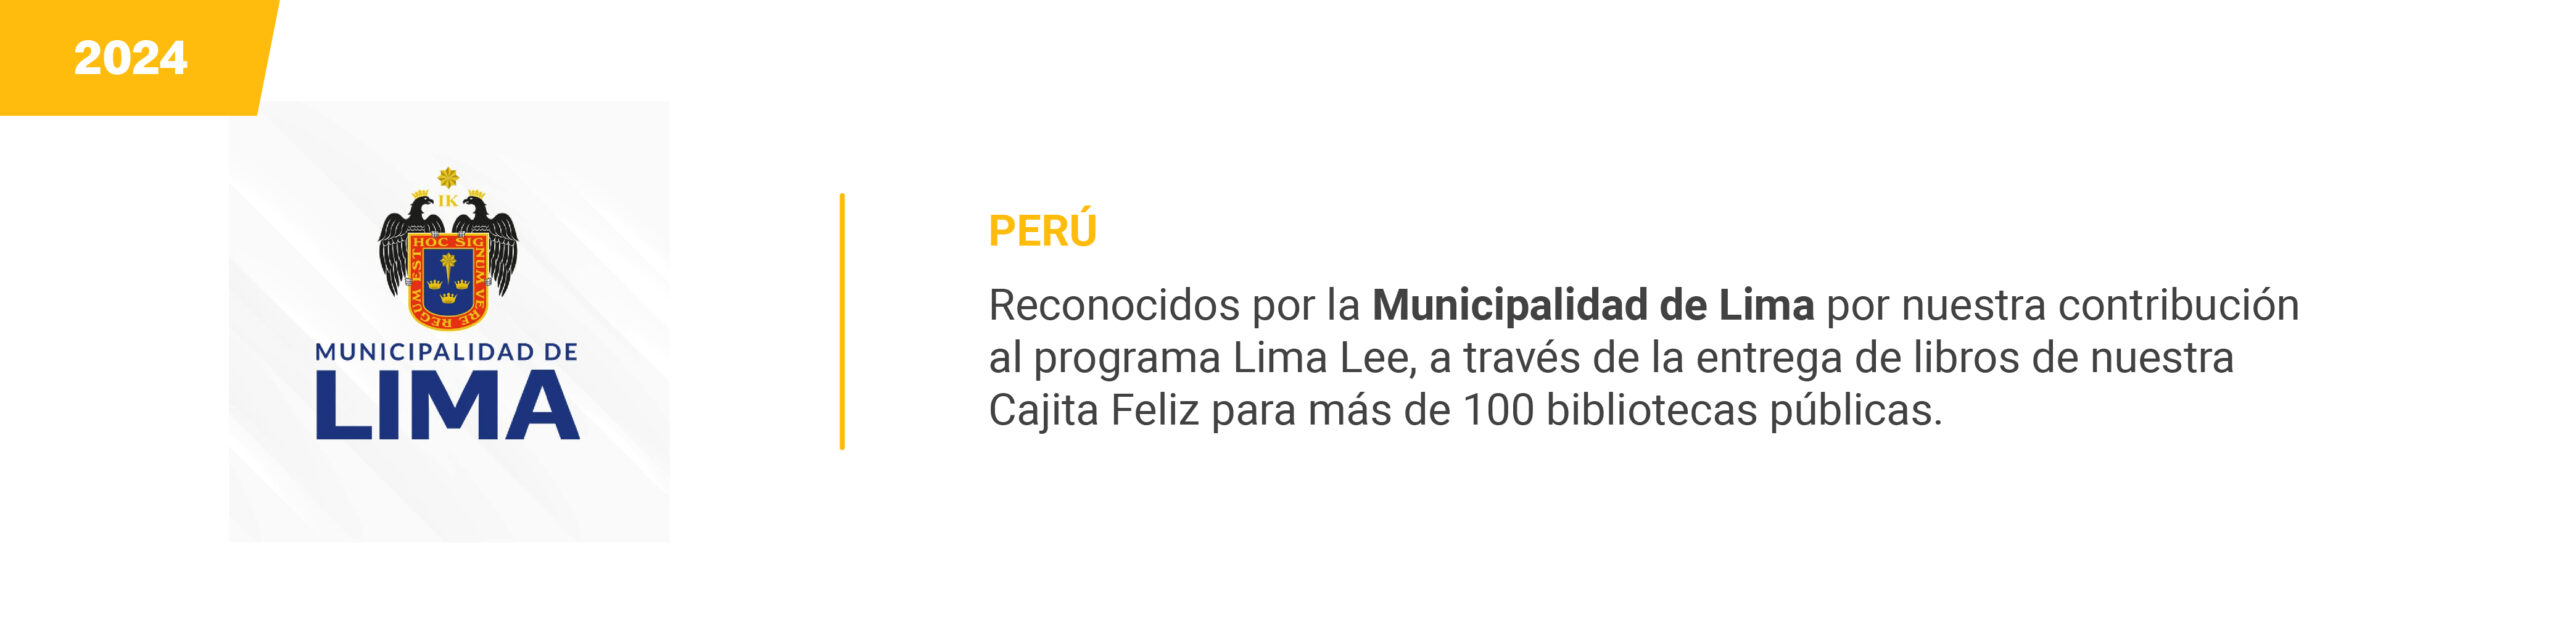 Municipalidad de Lima - 2024